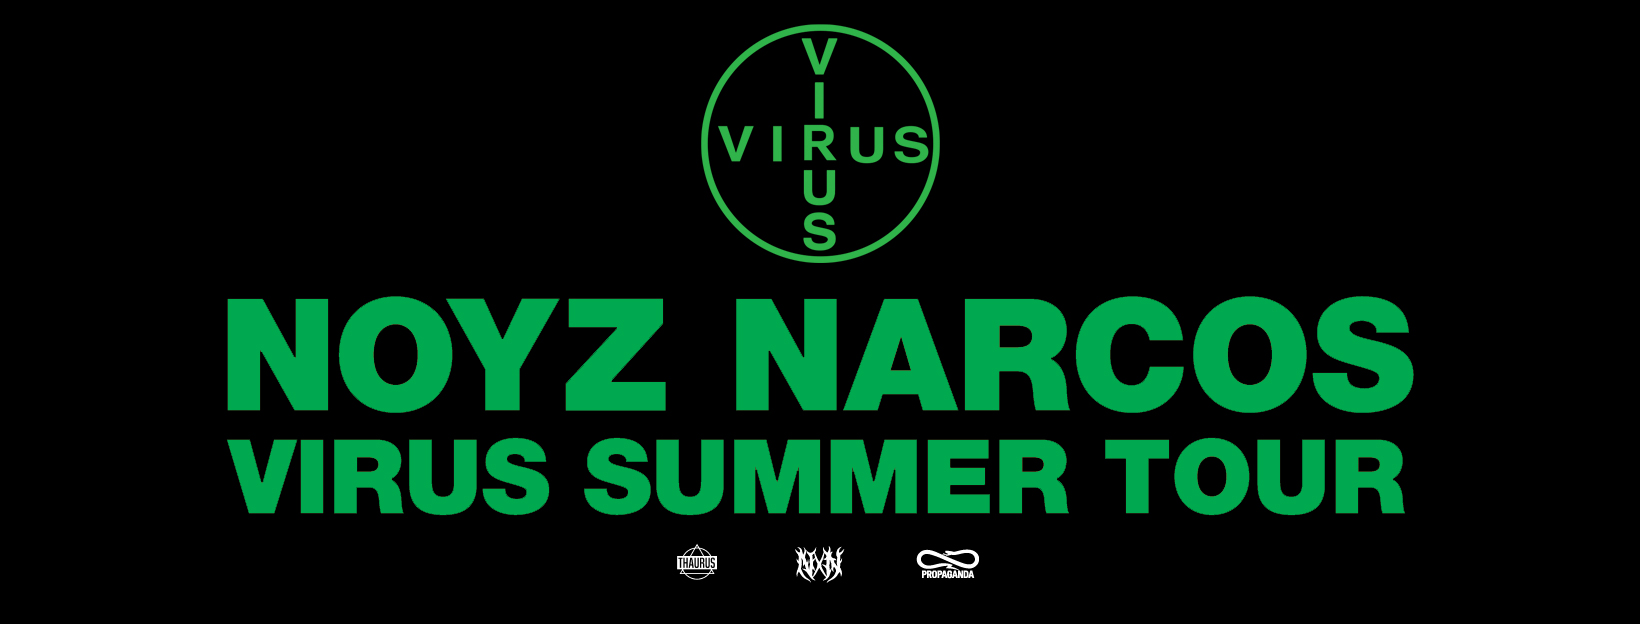 NOYZ NARCOS – VIRUS SUMMER TOUR